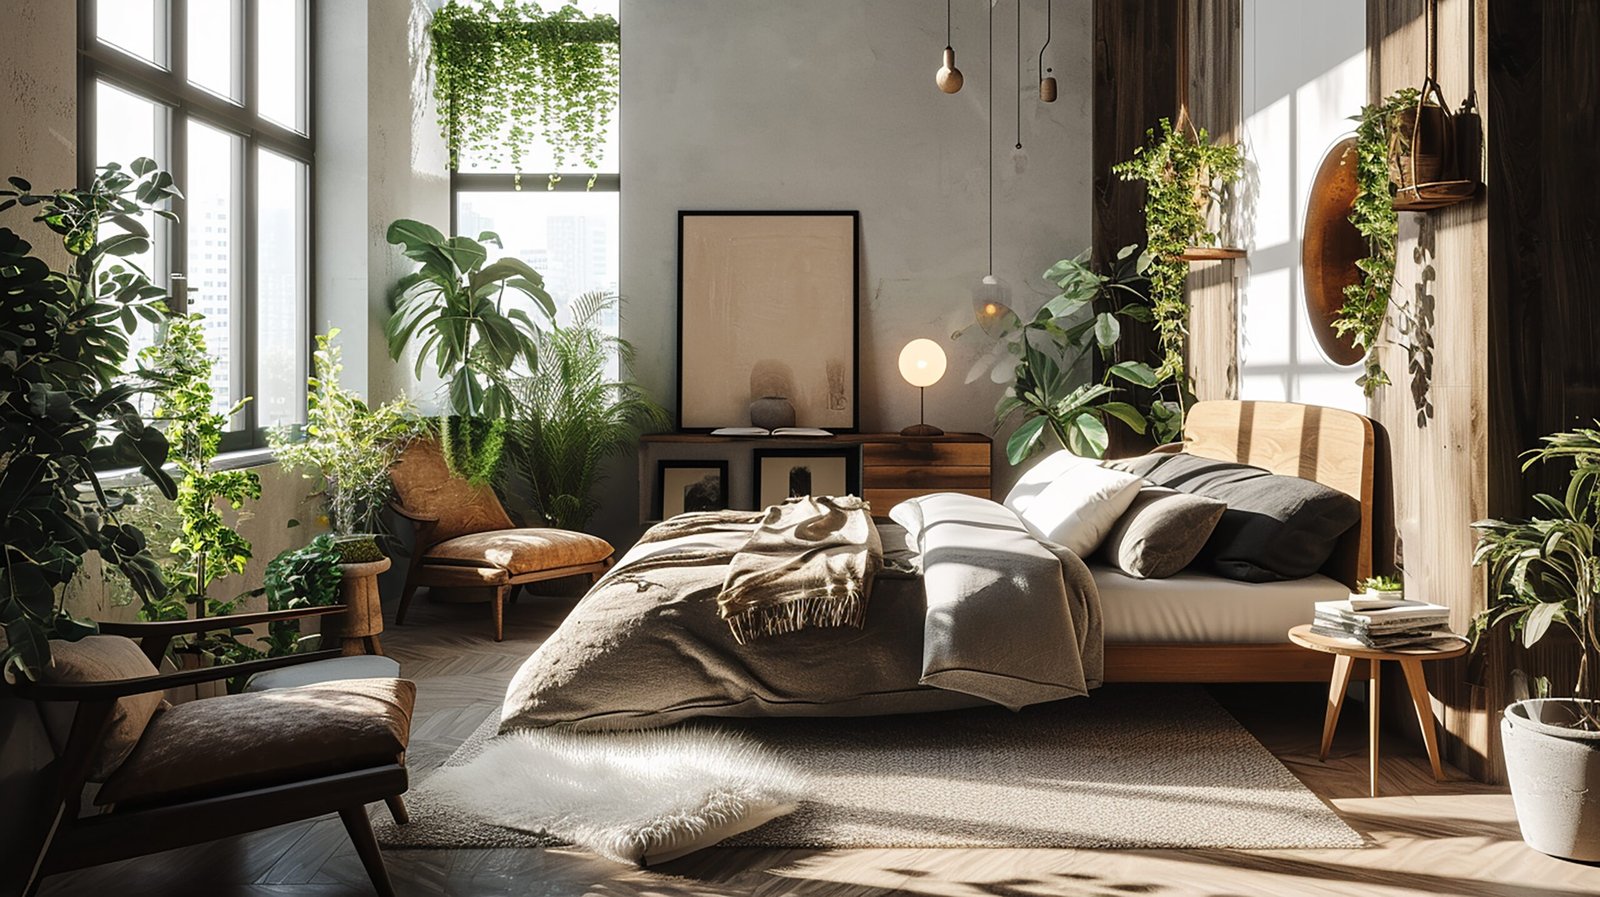 Bedroom interior design biophilic bedroom with plenty of indoor plants.